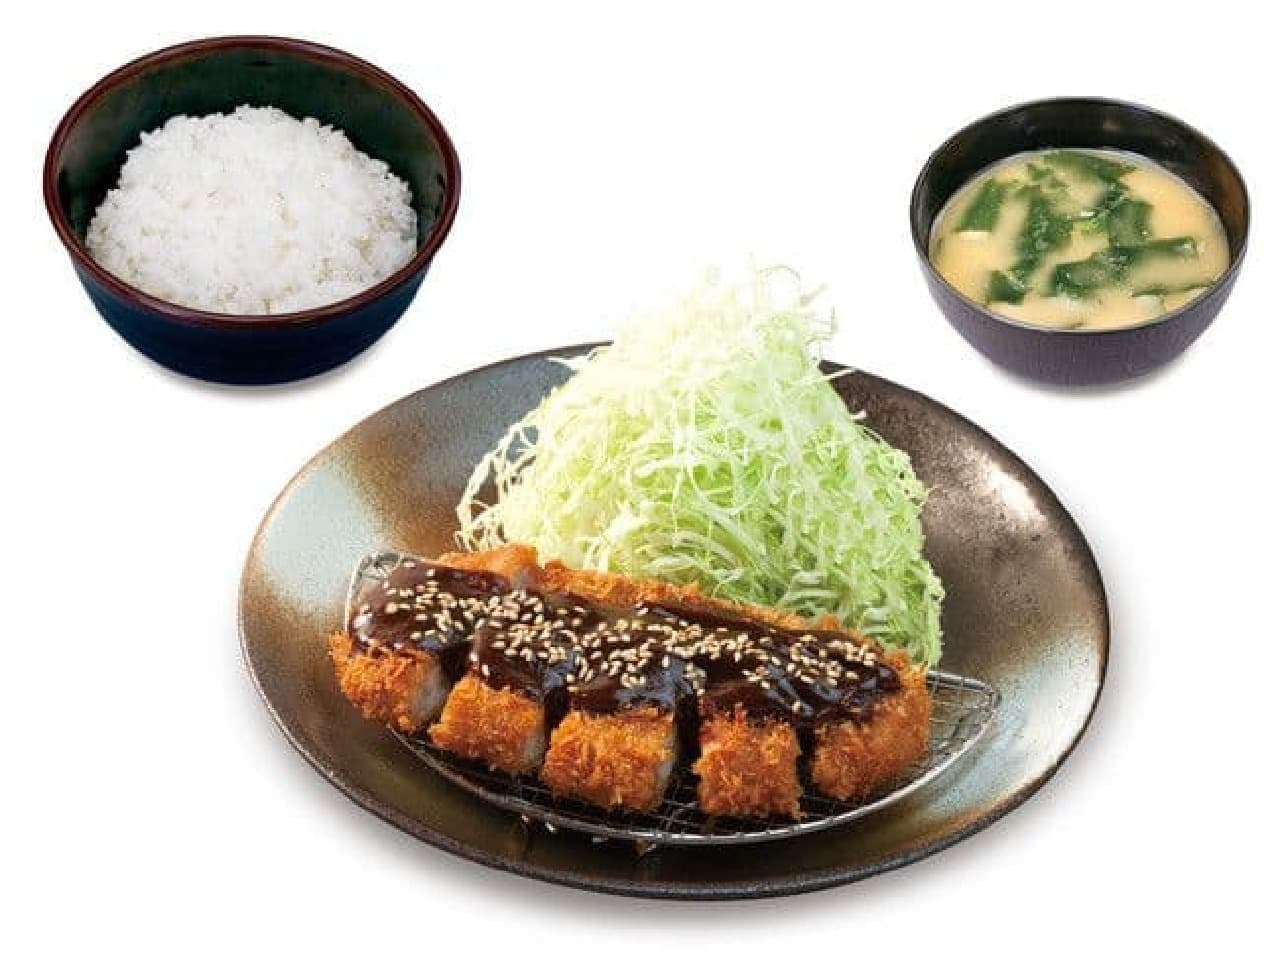 Matsunoya "Miso loin and set meal"